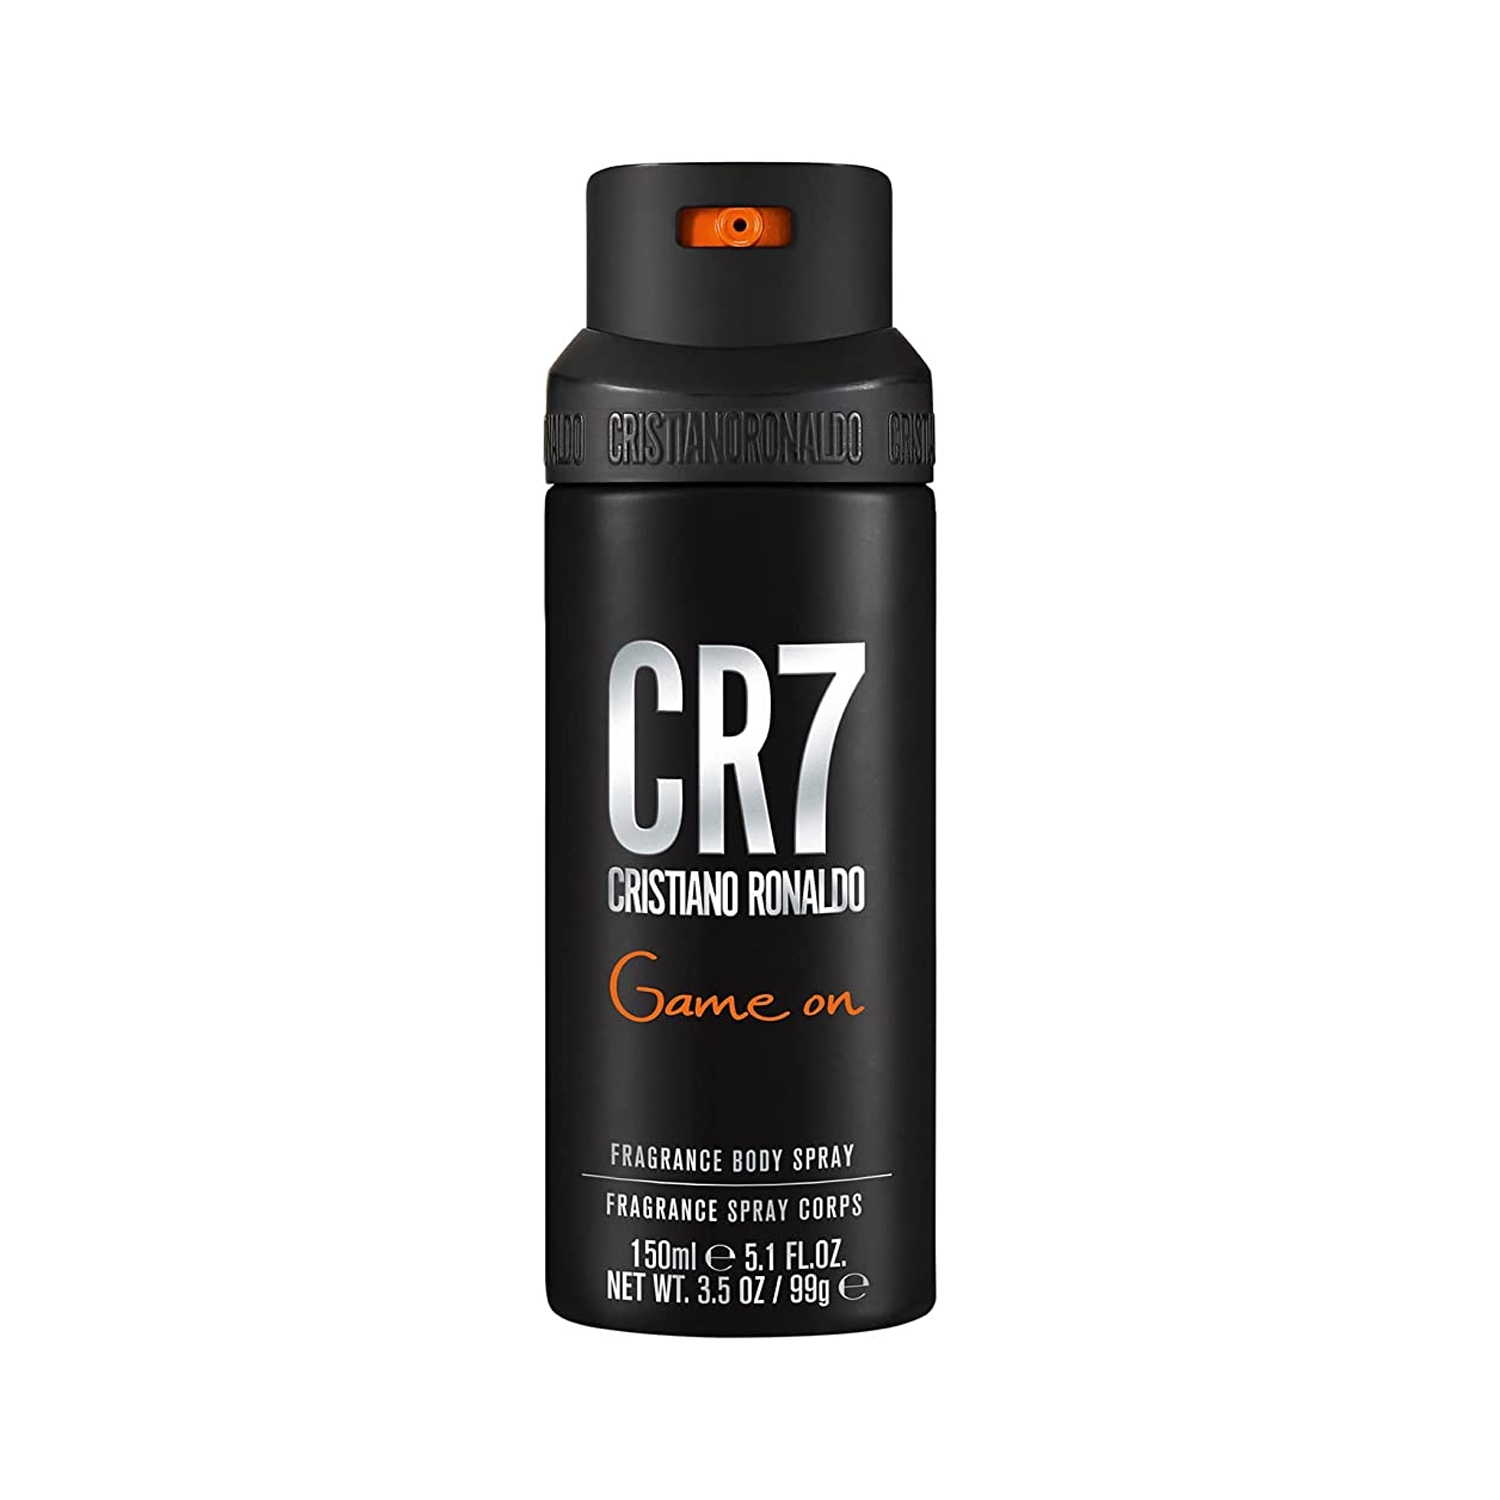 Cristiano Ronaldo | Cristiano Ronaldo CR7 Game On Fragrance Body Spray (150ml)